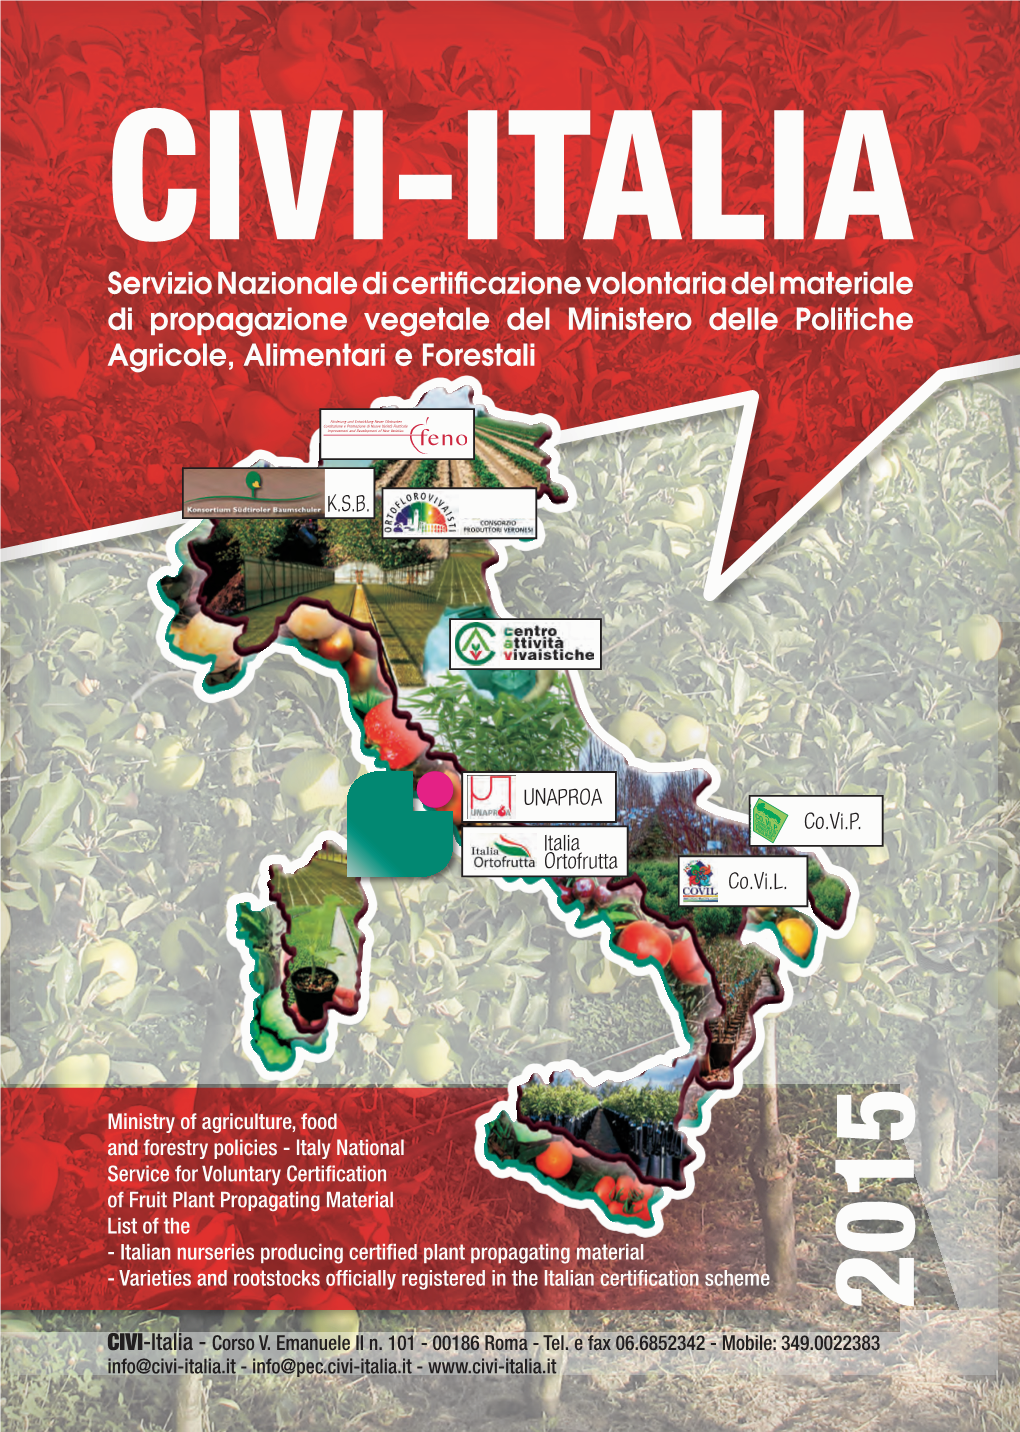 Scarica La Brochure Civi-Italia 2014